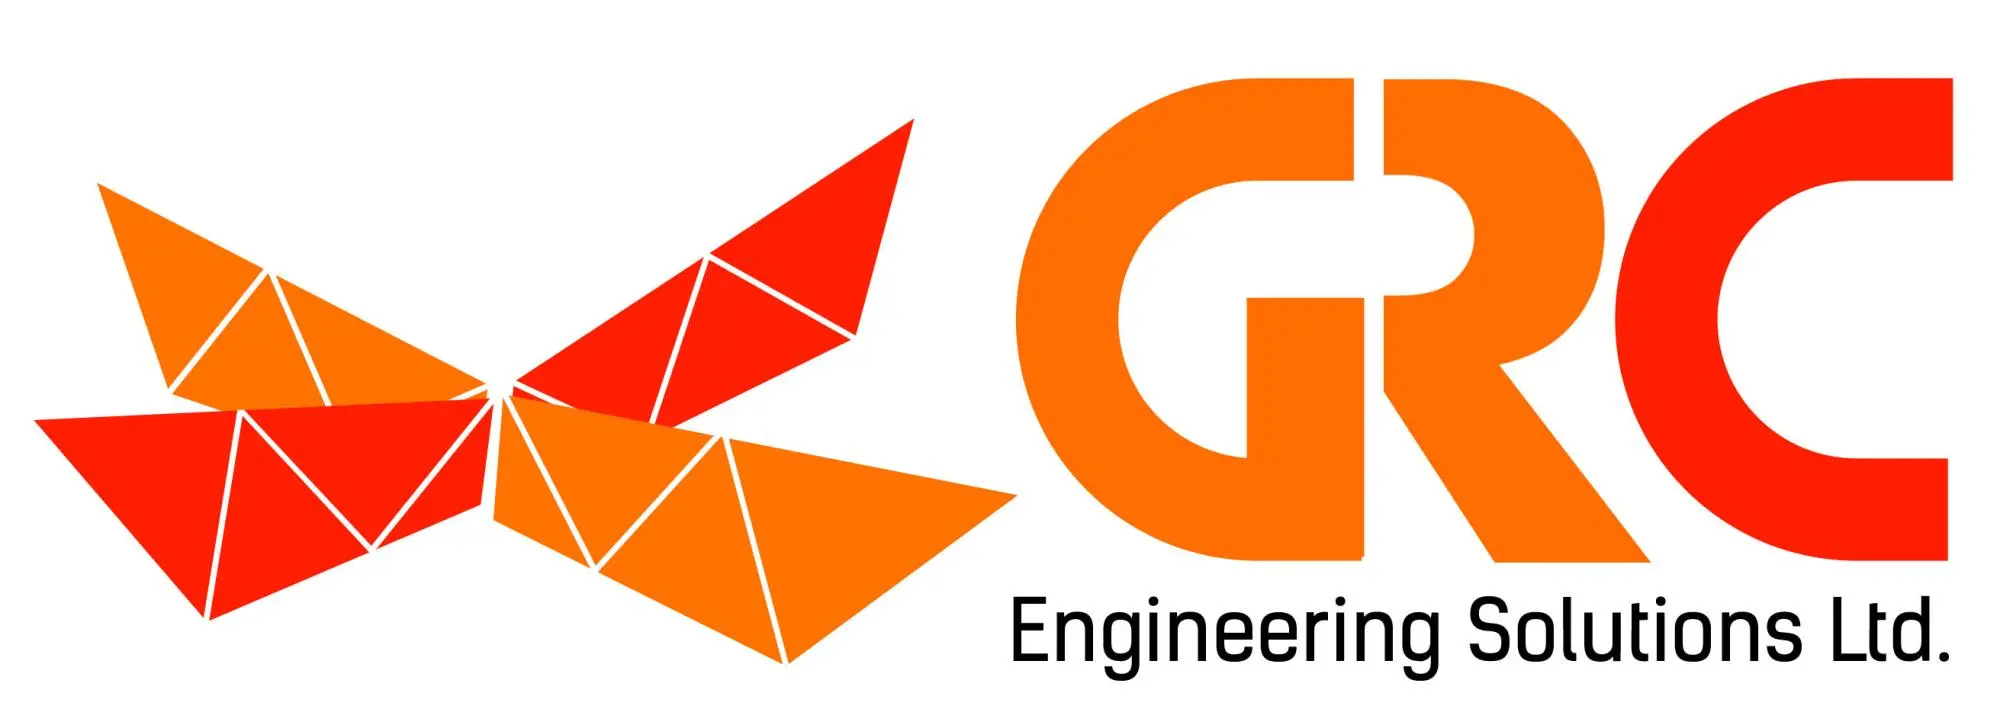 GRC Engineering Solutions Ltd. logo